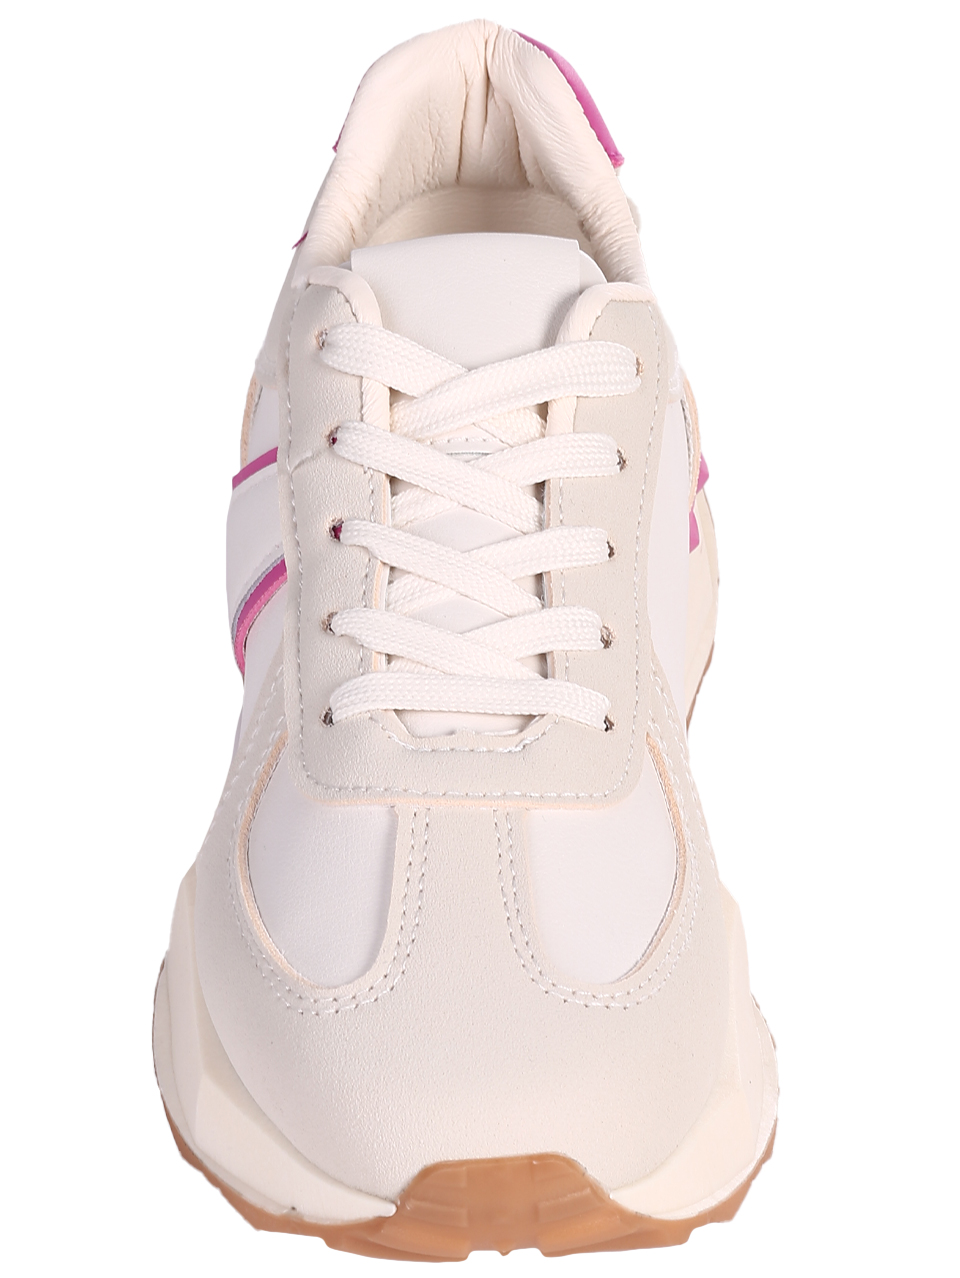 Eжедневни дамски обувки от еко кожа в бял/фуксия цвят 3U-24001 off white/fuchsia